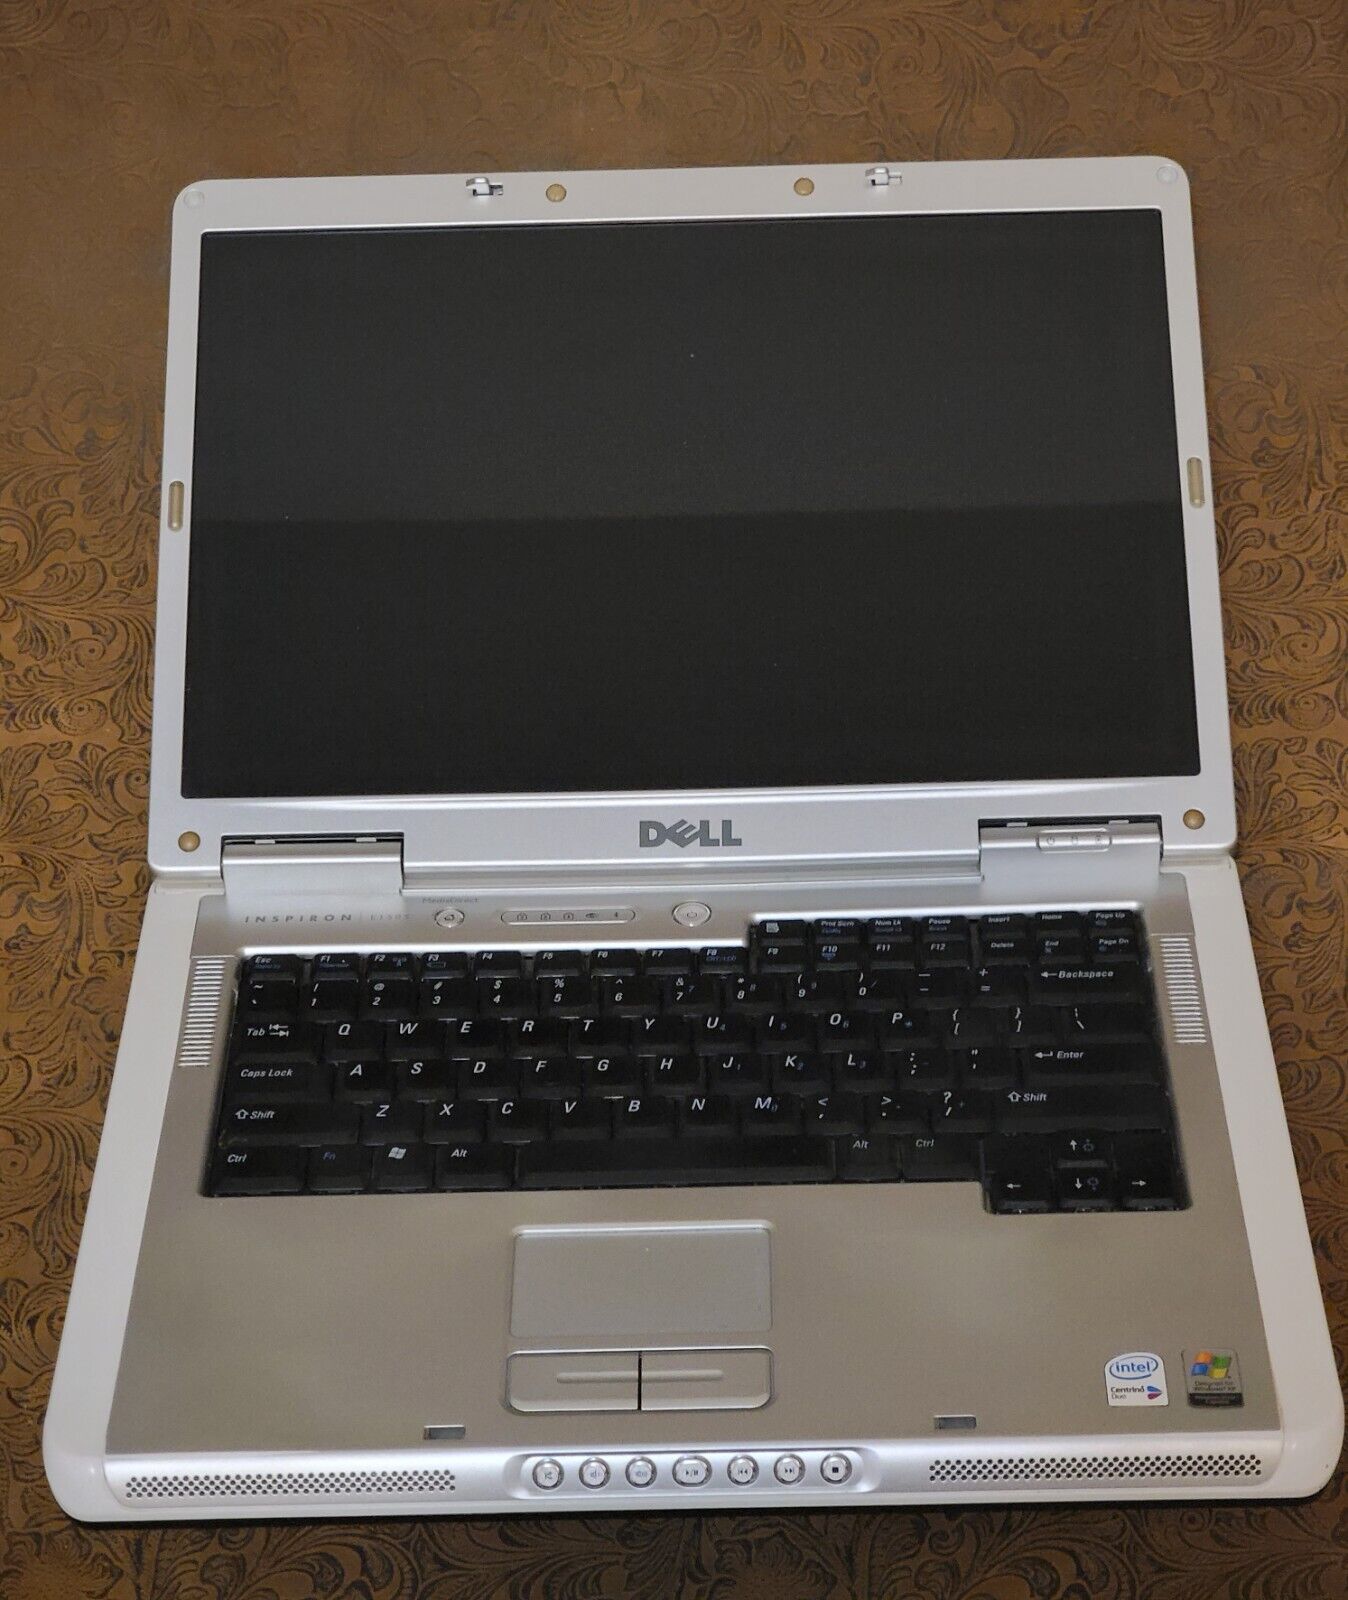 Dell Inspiron E1505 Win XP Media Center Laptop 120Gb HDD, 1Gb RAM, Core Duo ᵴ